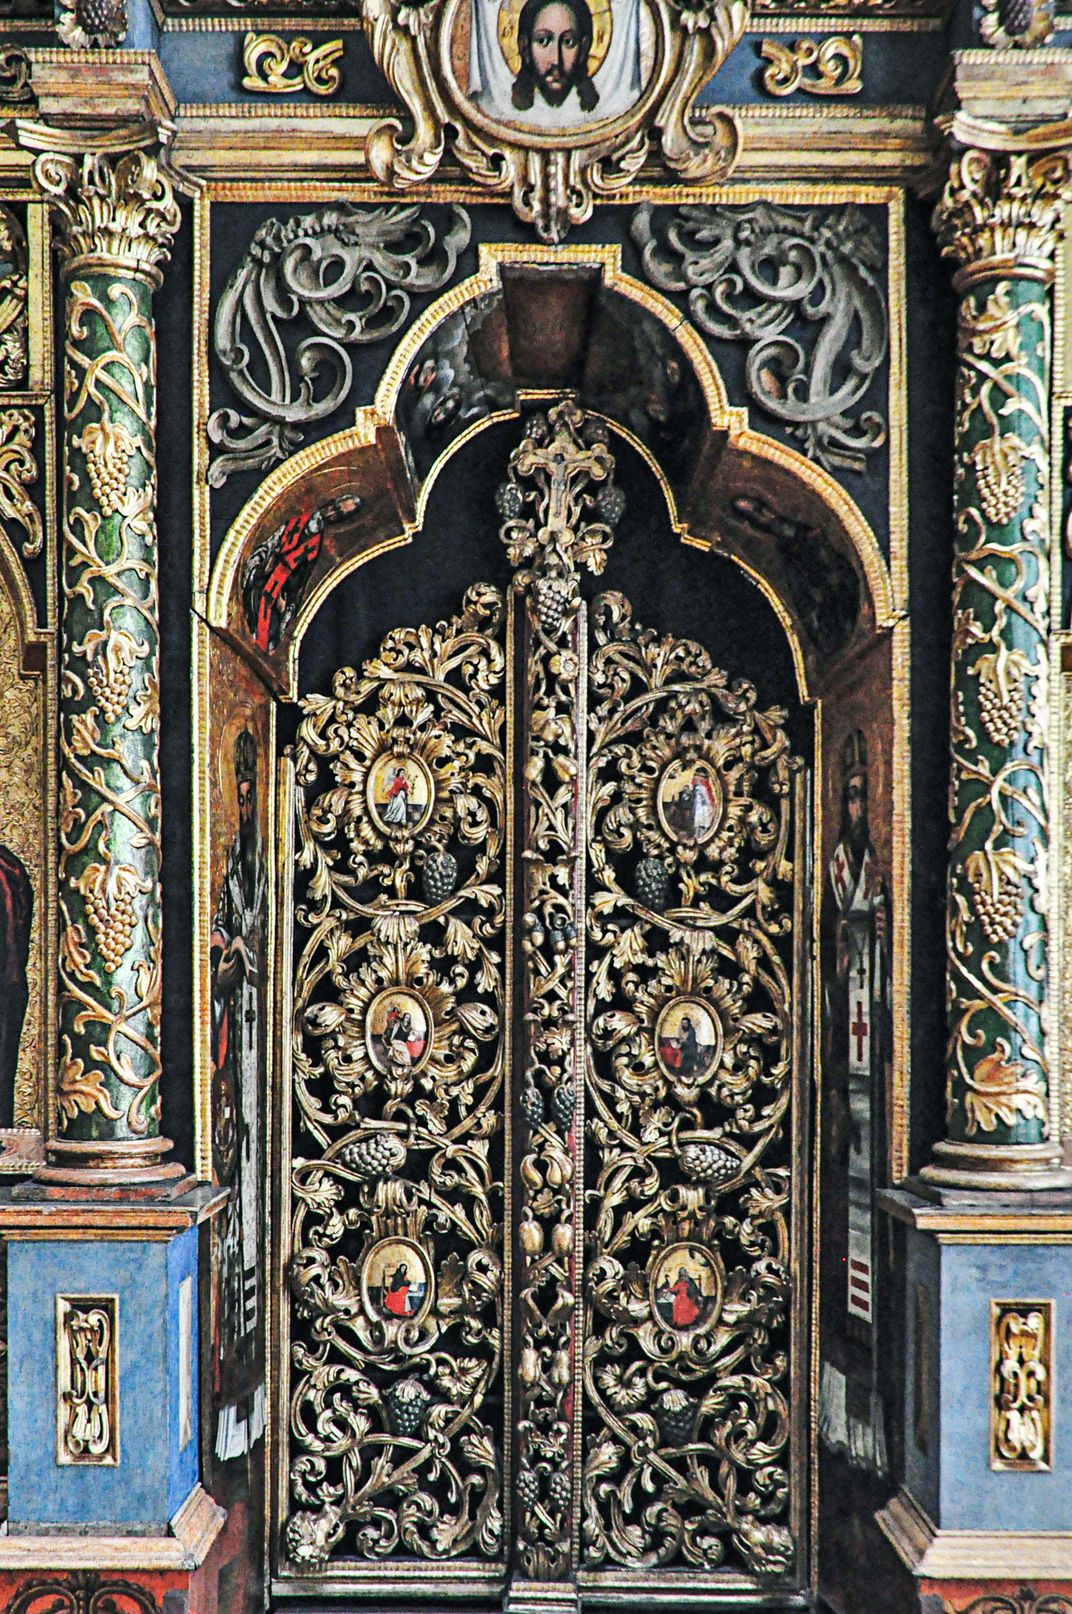 The altarpiece’s Royal Doors